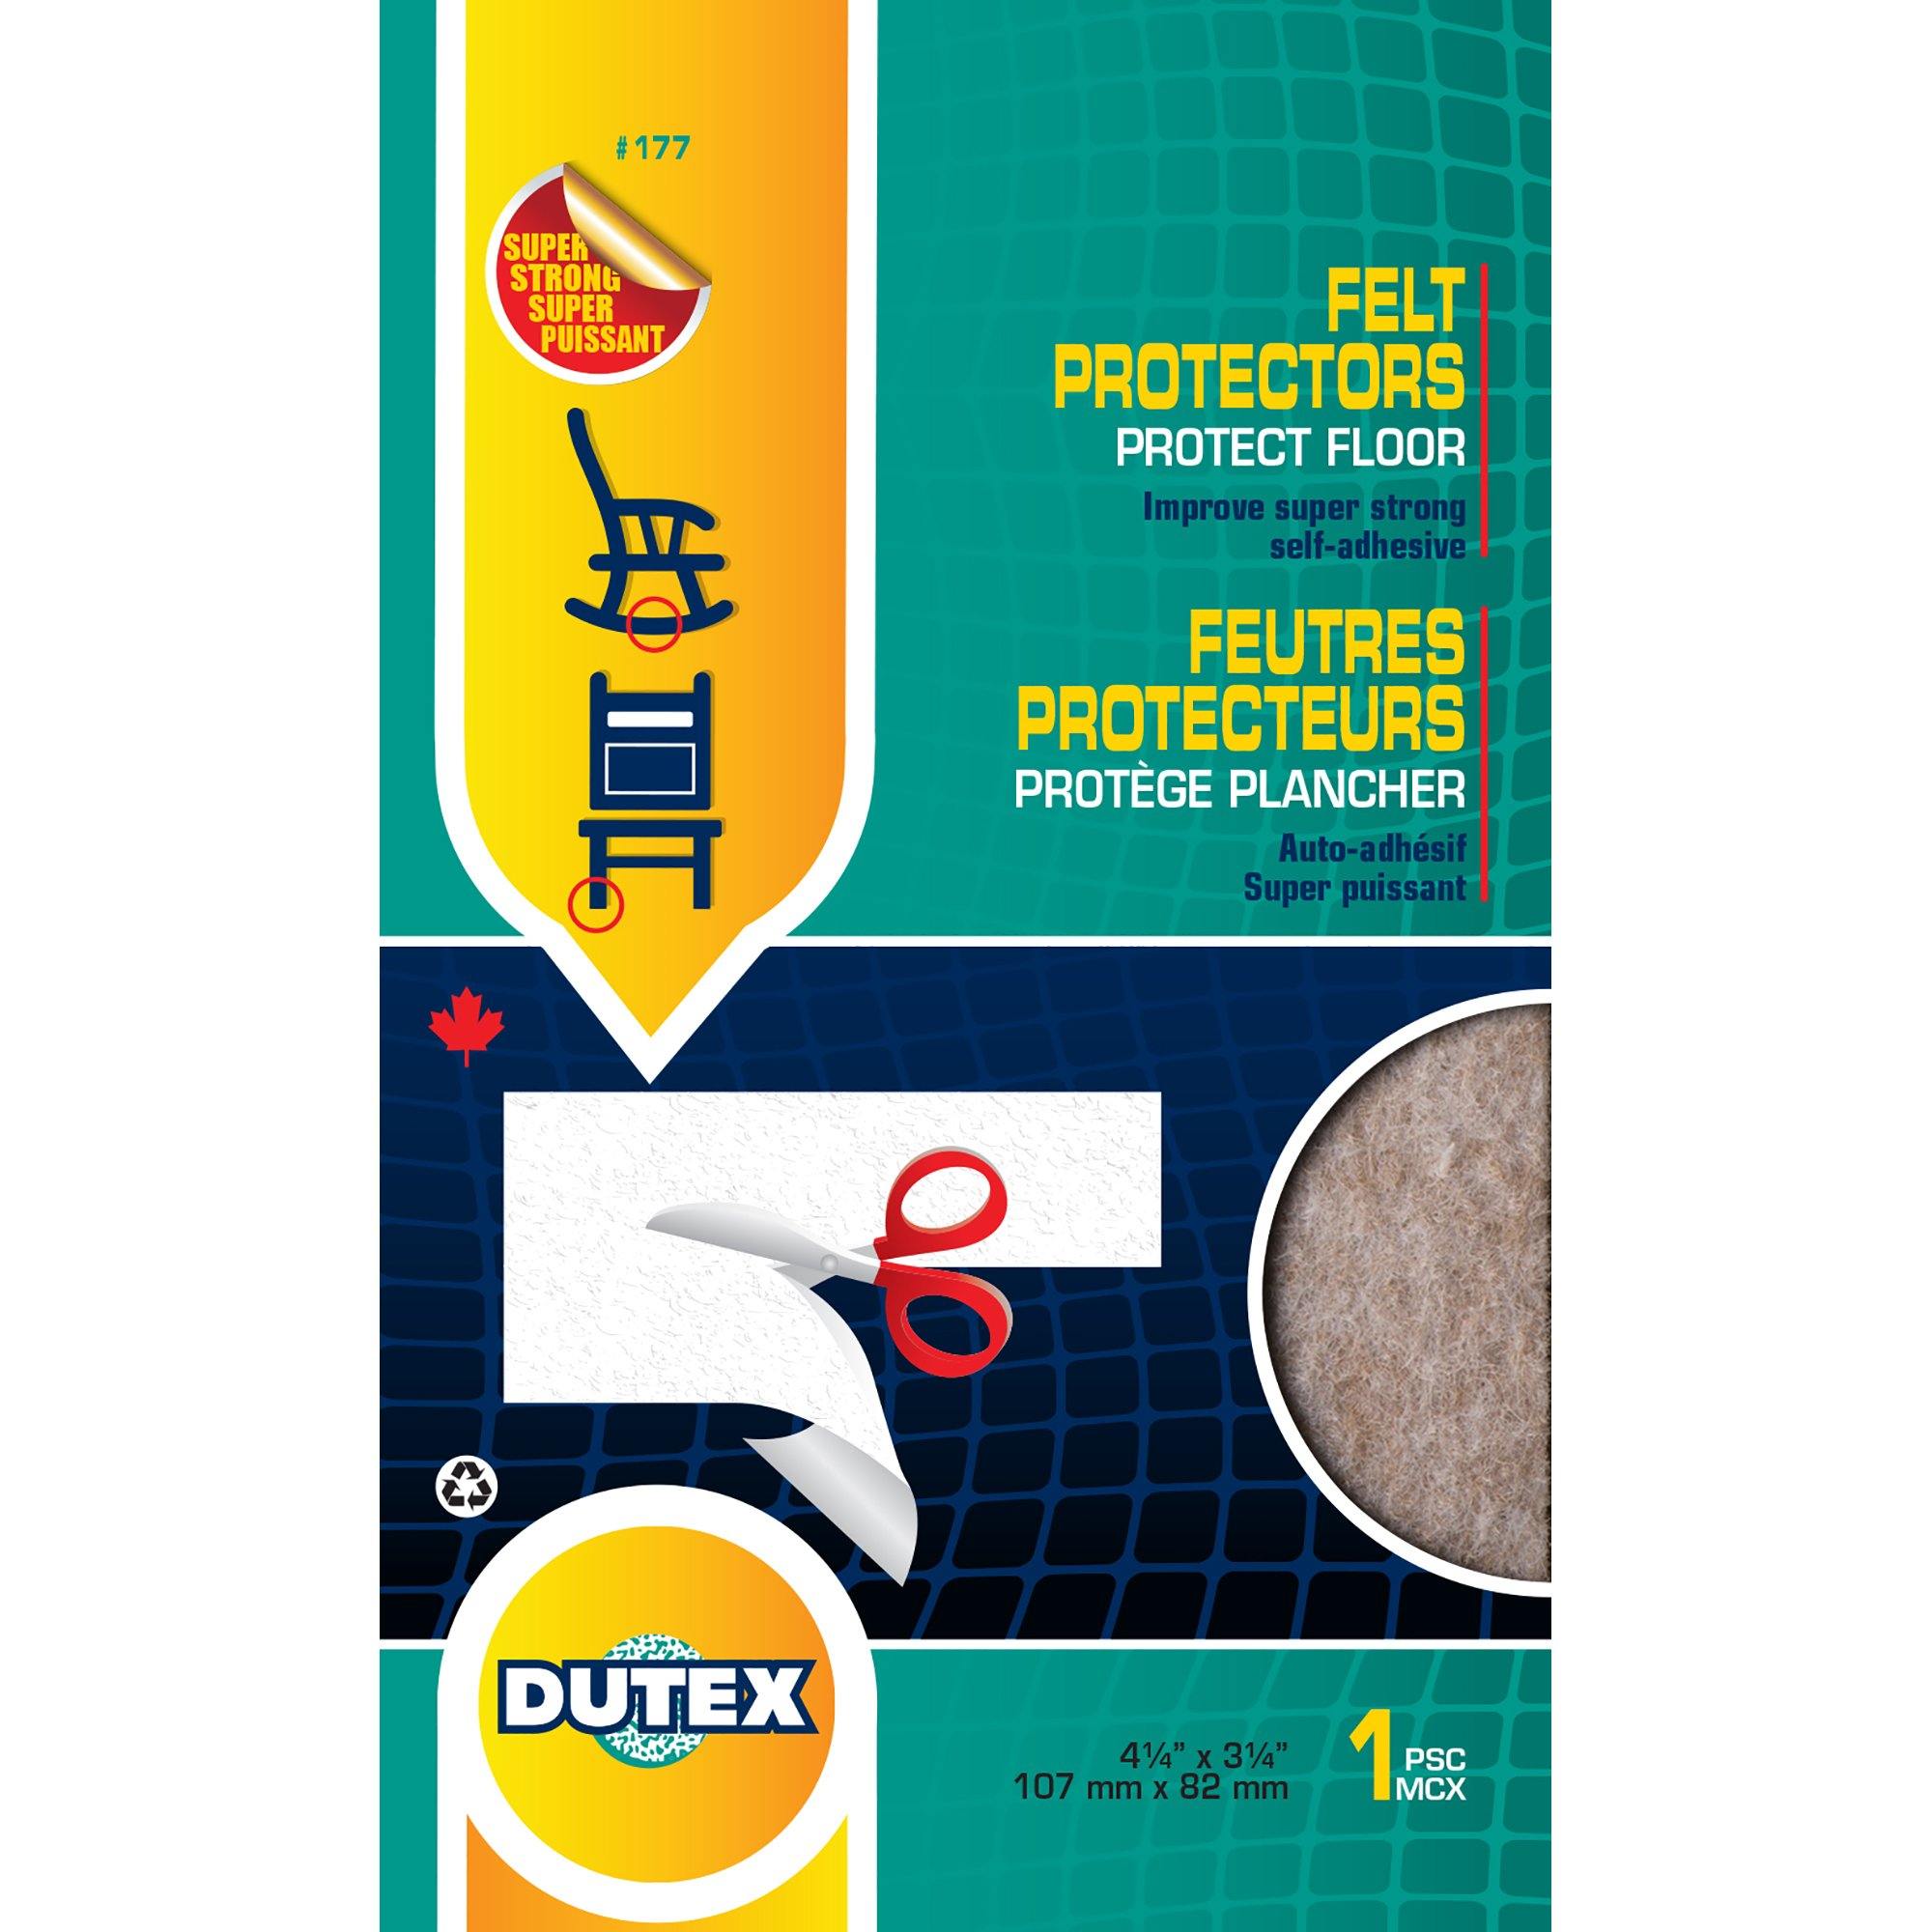 Felt Protectors For Floor Super Strong Self-Adhesive 4 1/4" X 3 1/4" - Dollar Max Dépôt